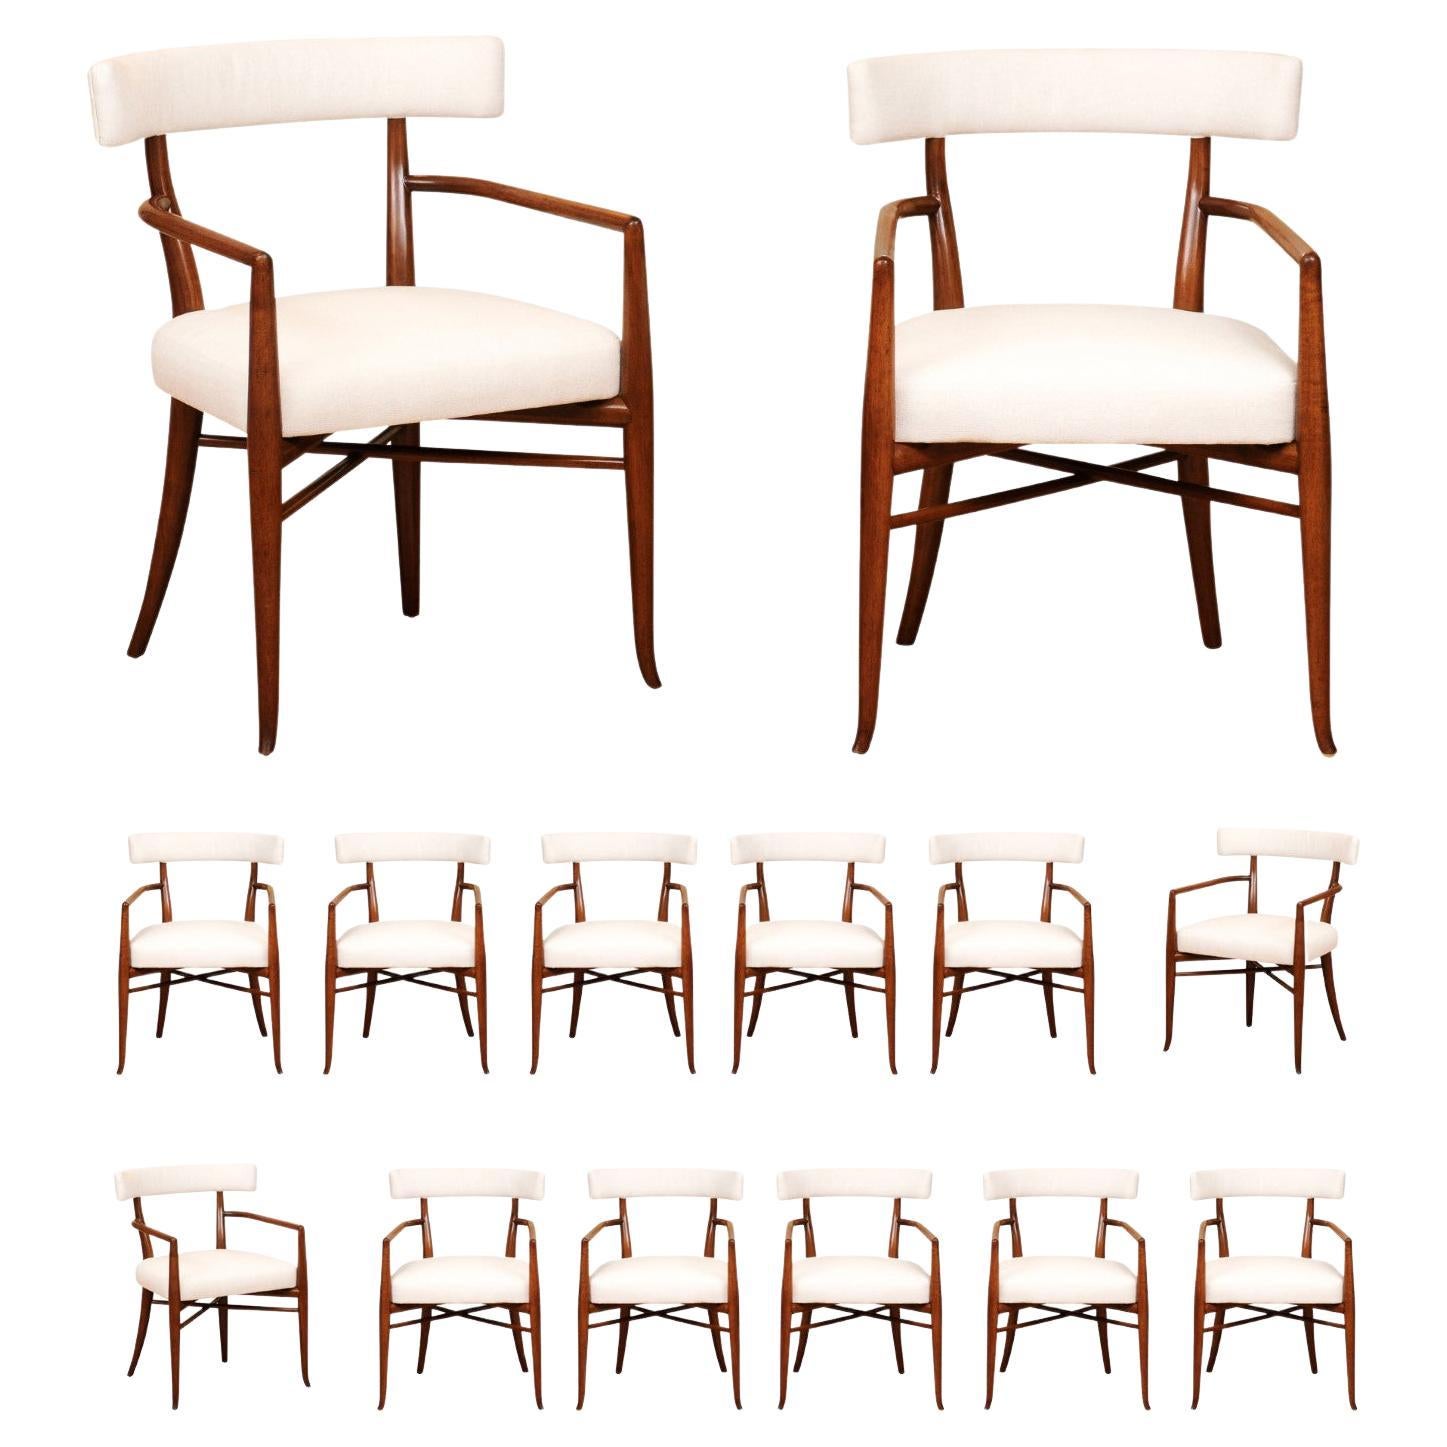 Extraordinaire ensemble de 14 chaises modernes Klismos à tous les accoudoirs par Robsjohn-Gibbings